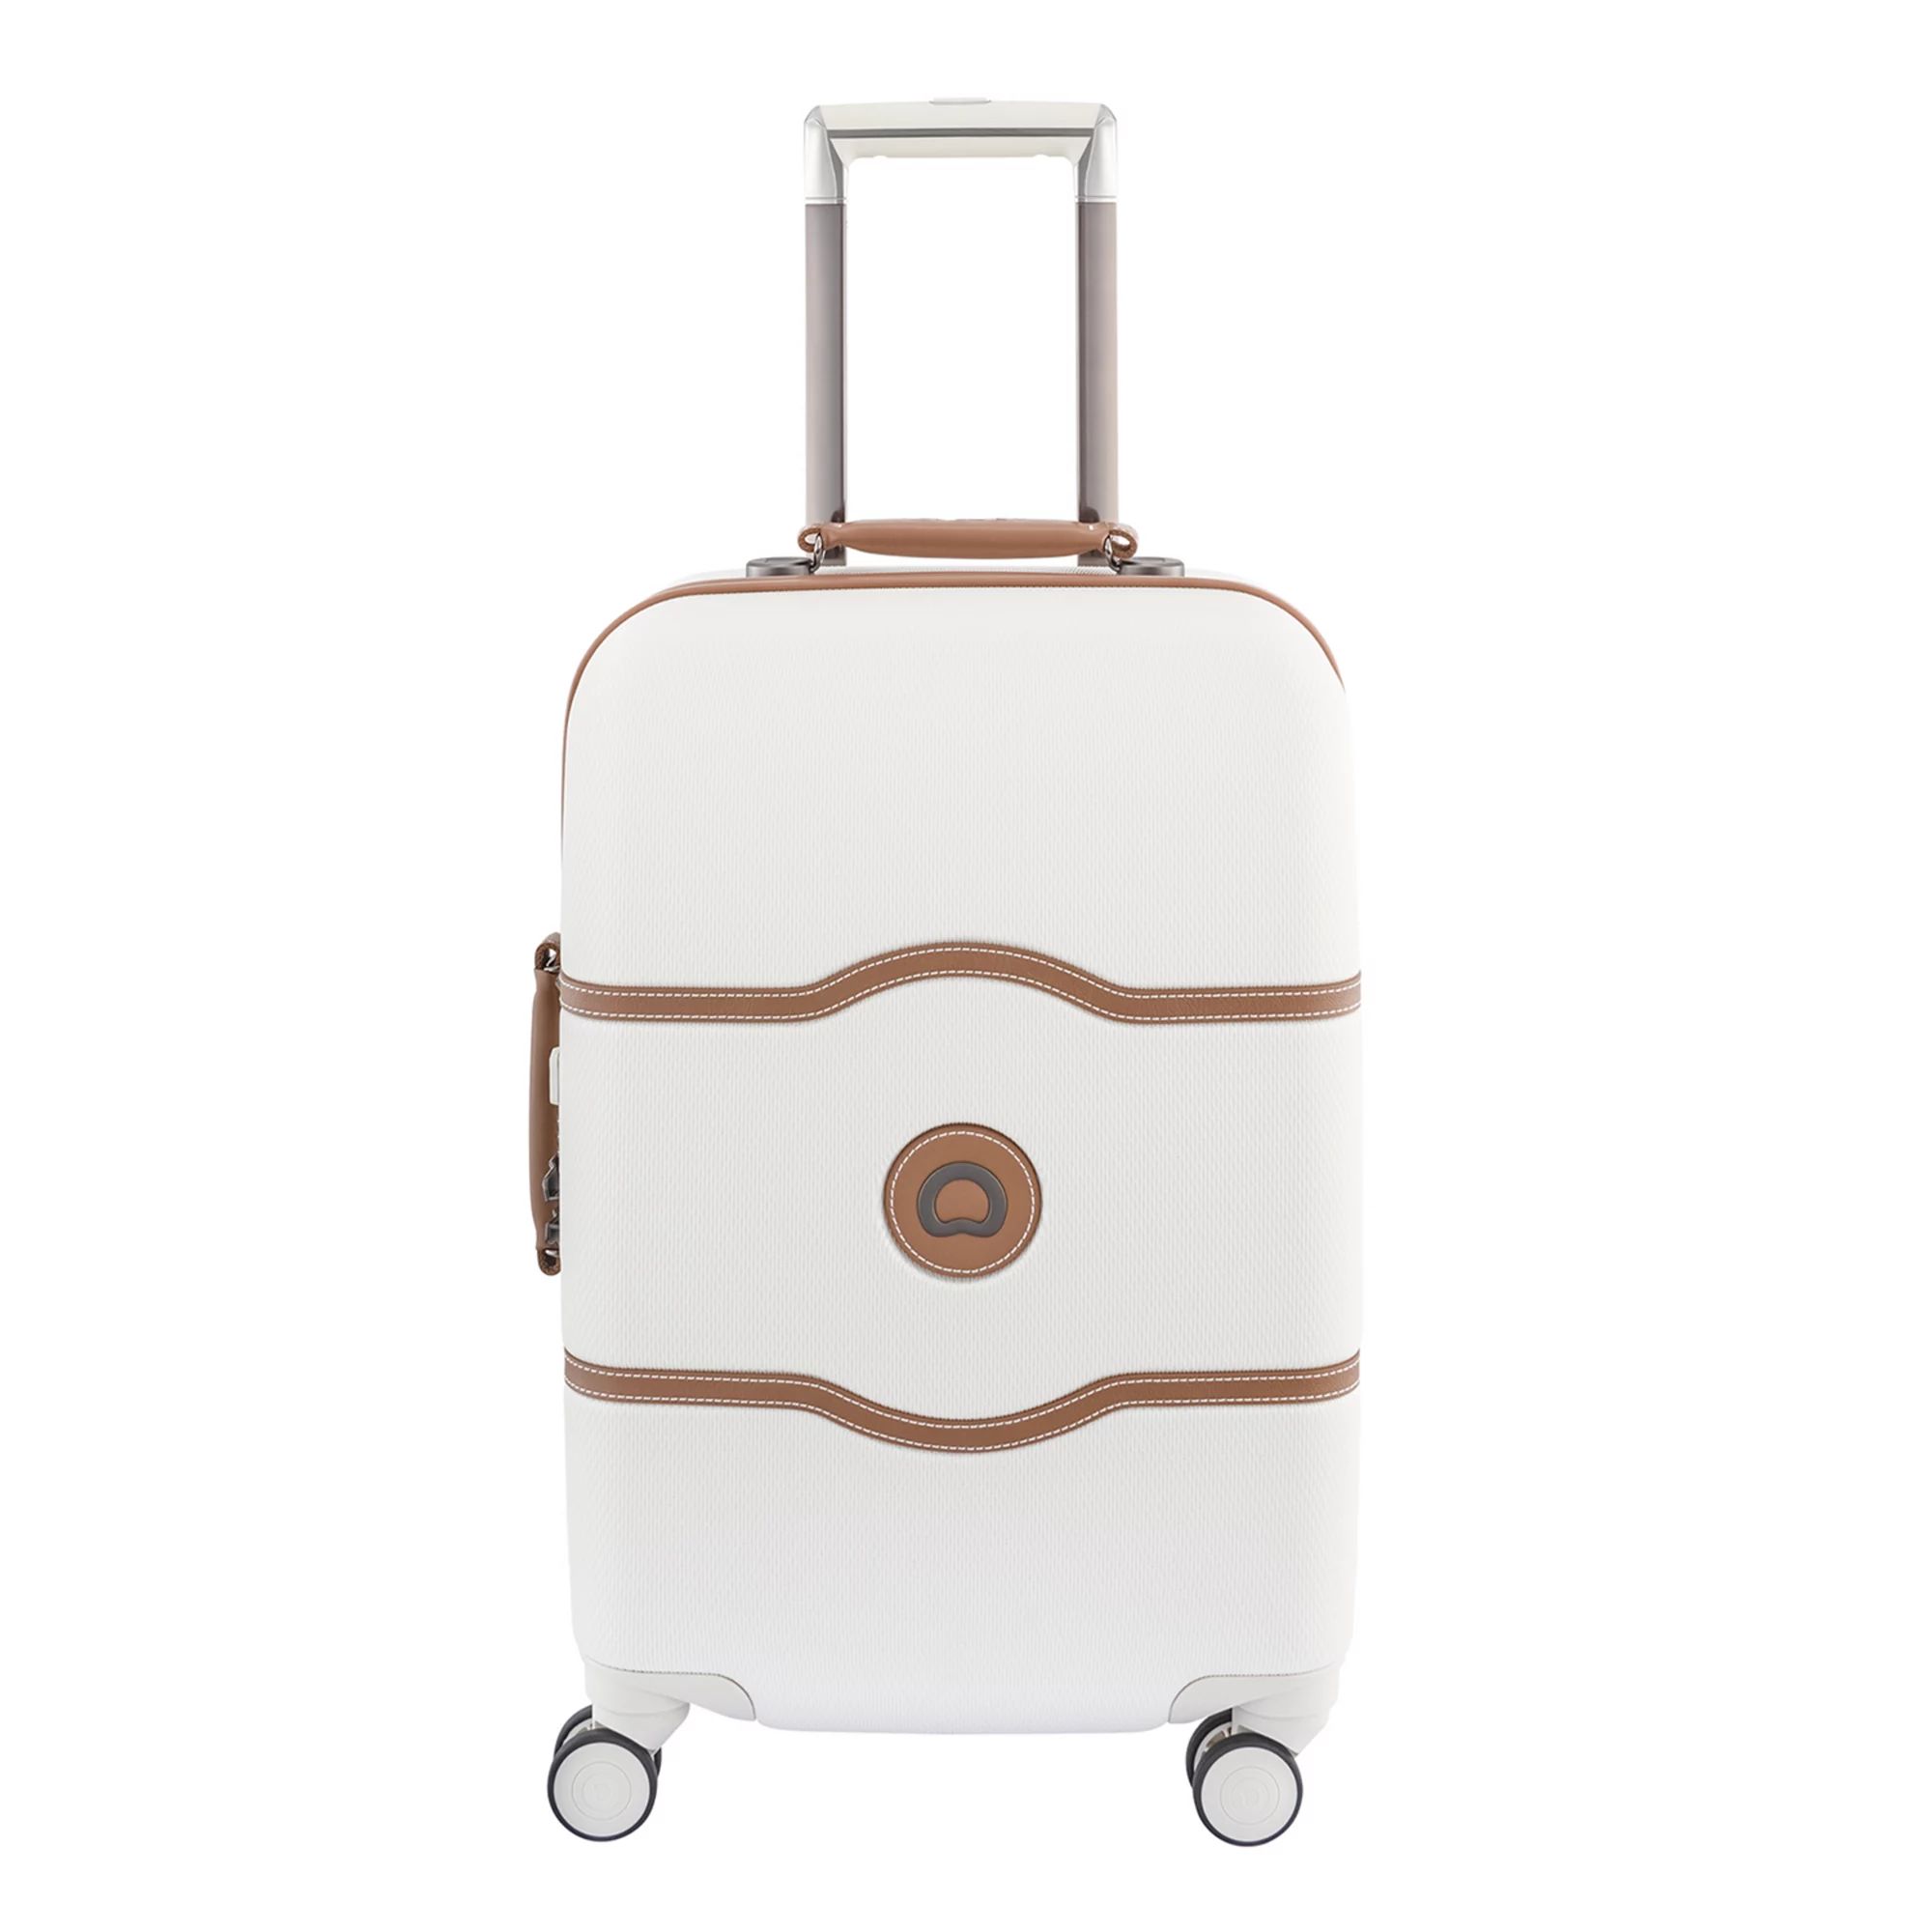 Delsey Chatelet Hardside Spinner Luggage | Kohl's